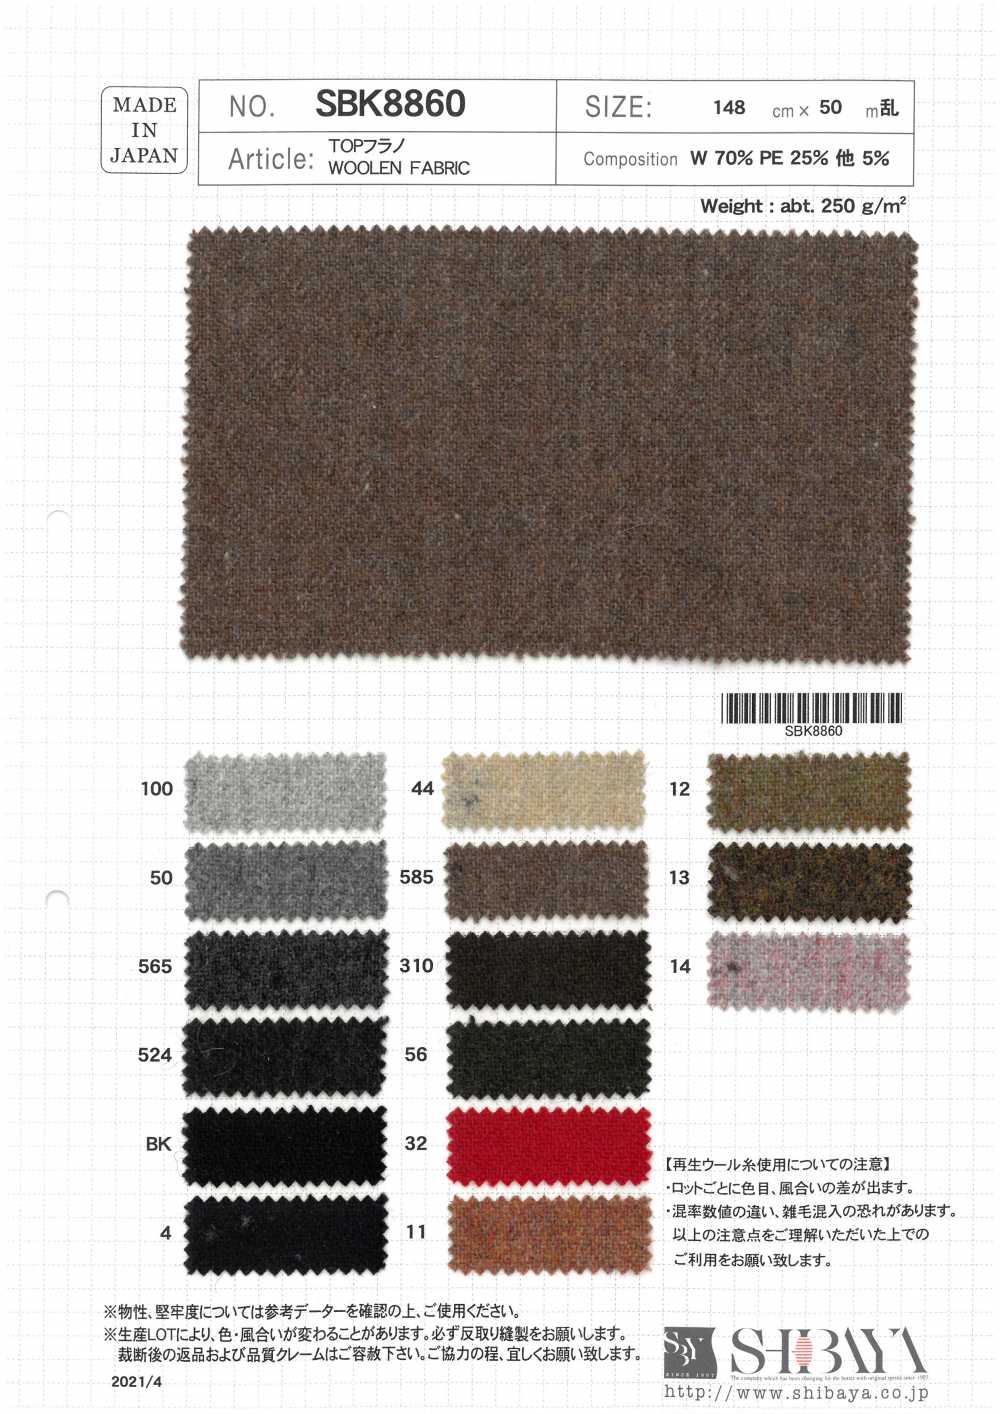 SBK8860 TOP Flanell[Textilgewebe] SHIBAYA